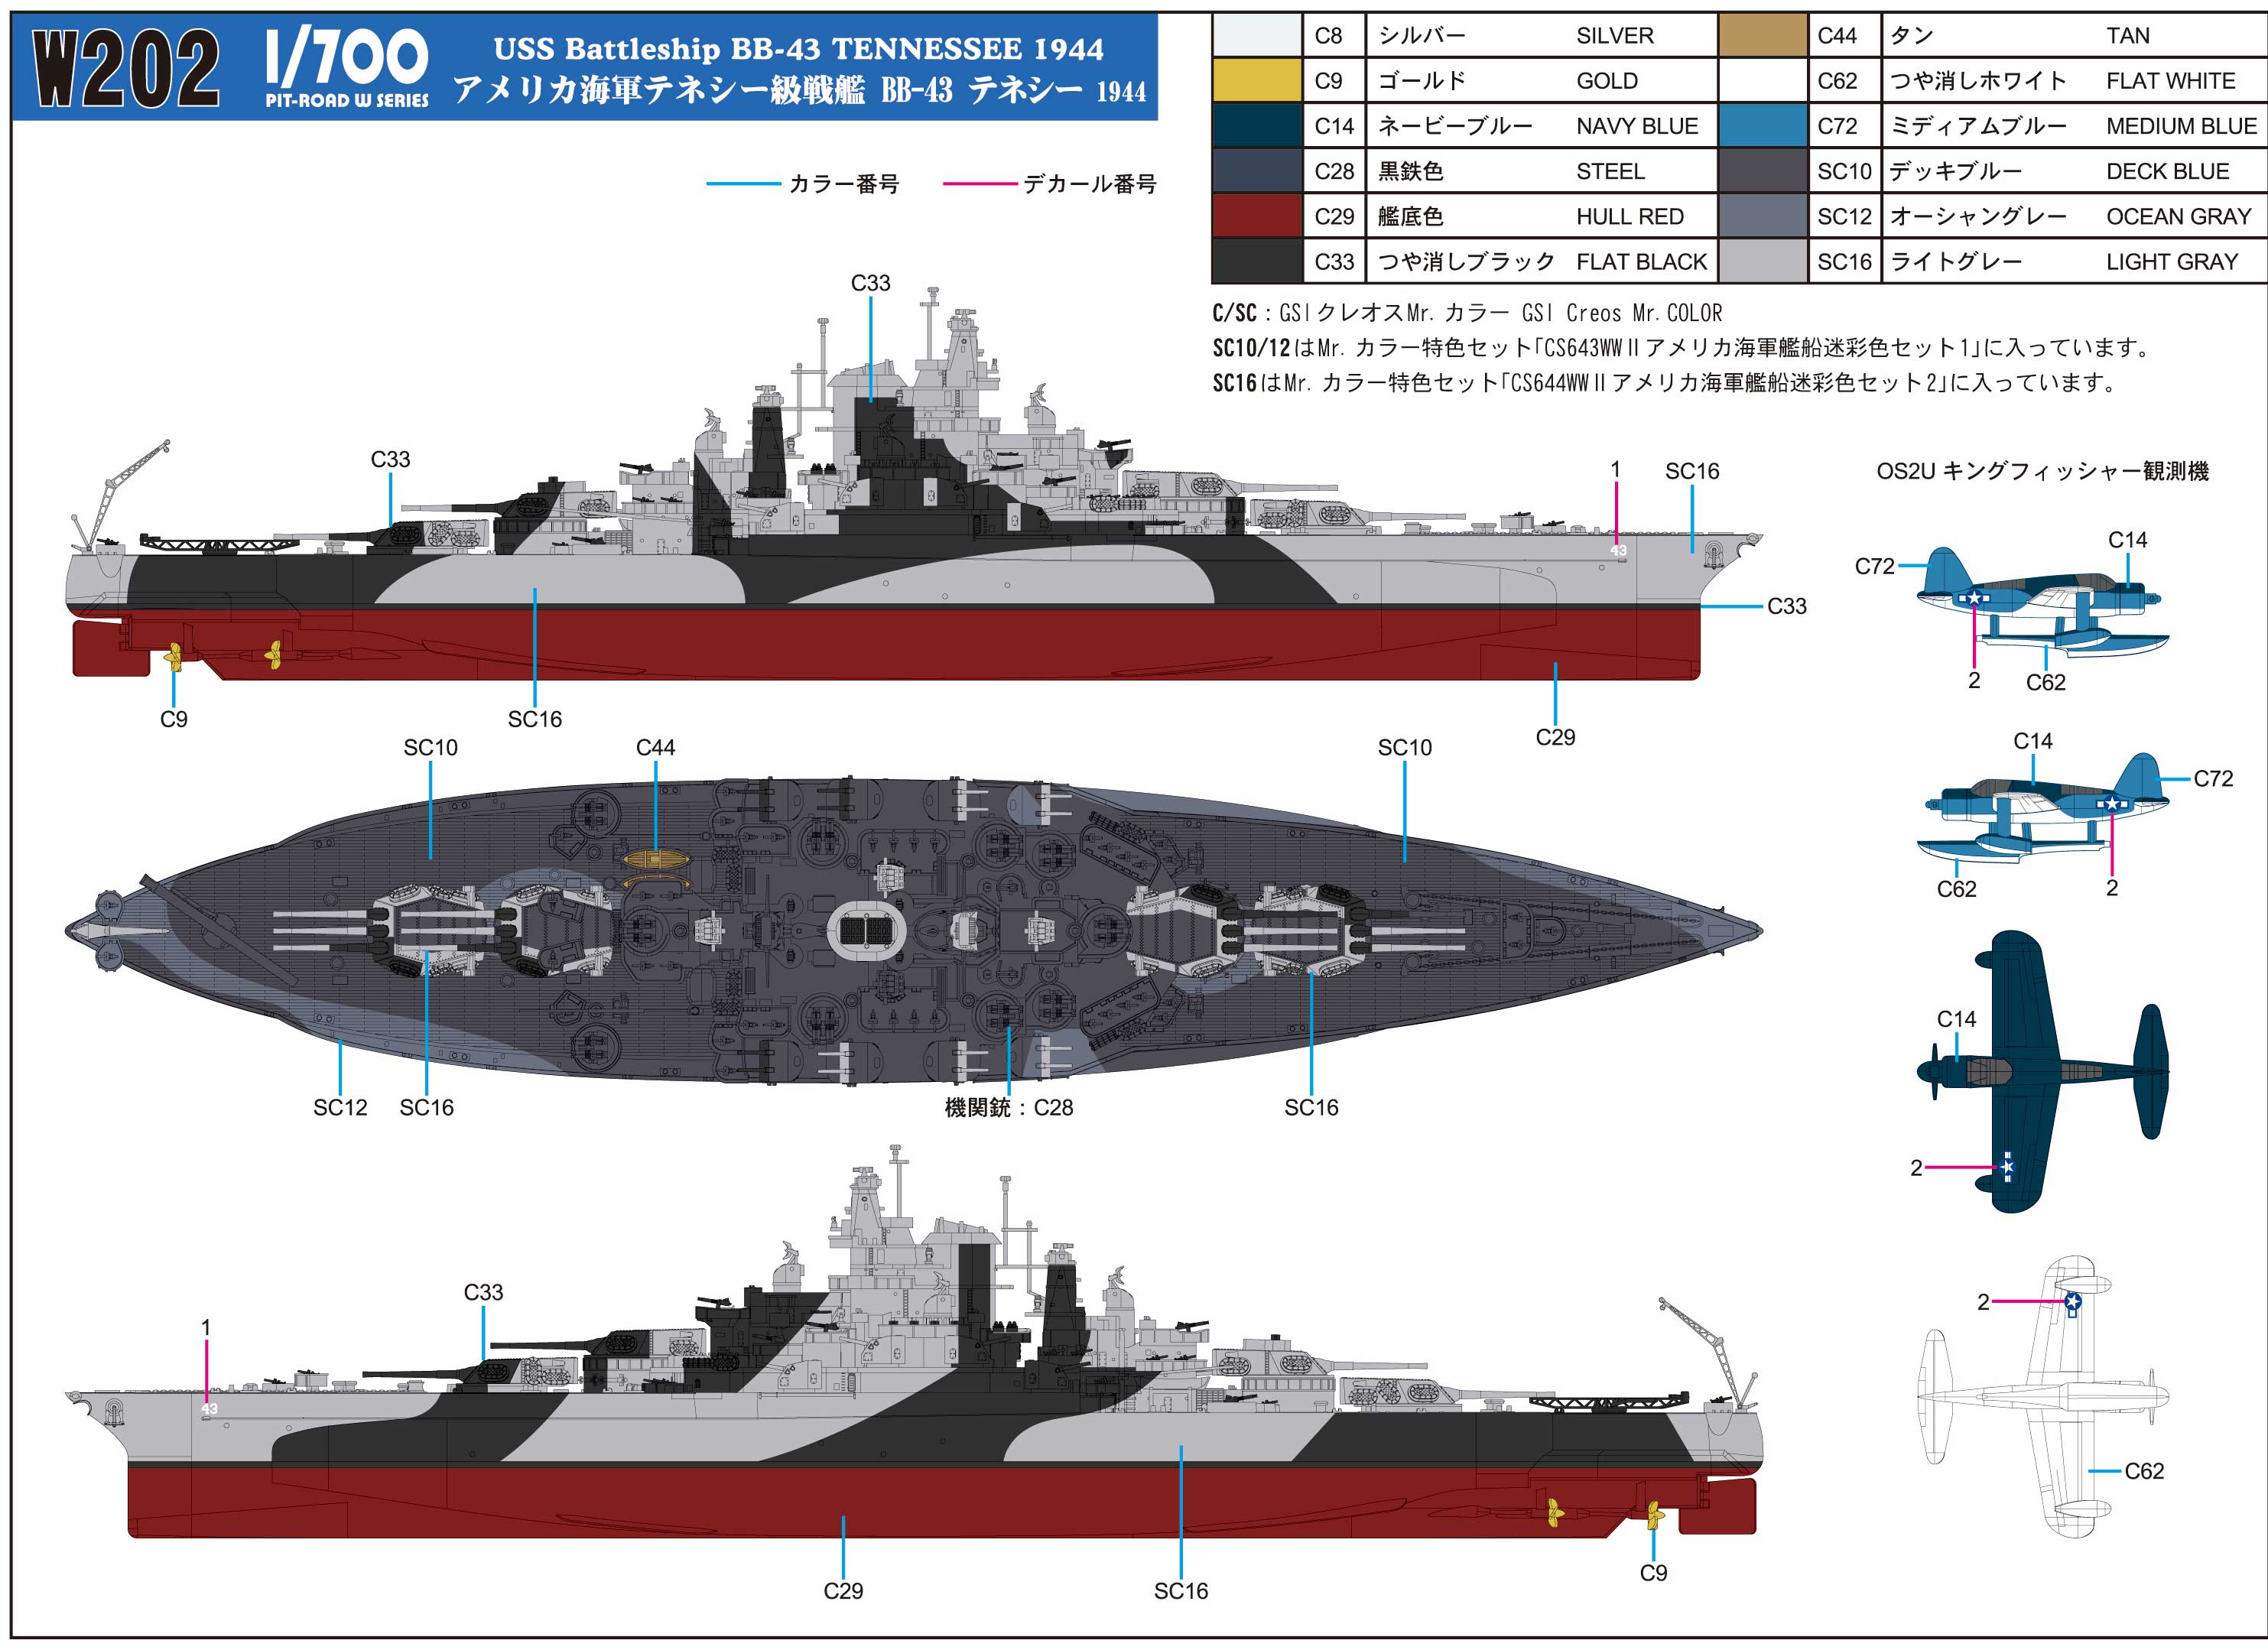 1/700 アメリカ海軍 戦艦 BB-43 テネシー 1944 [W202] - 4,312円